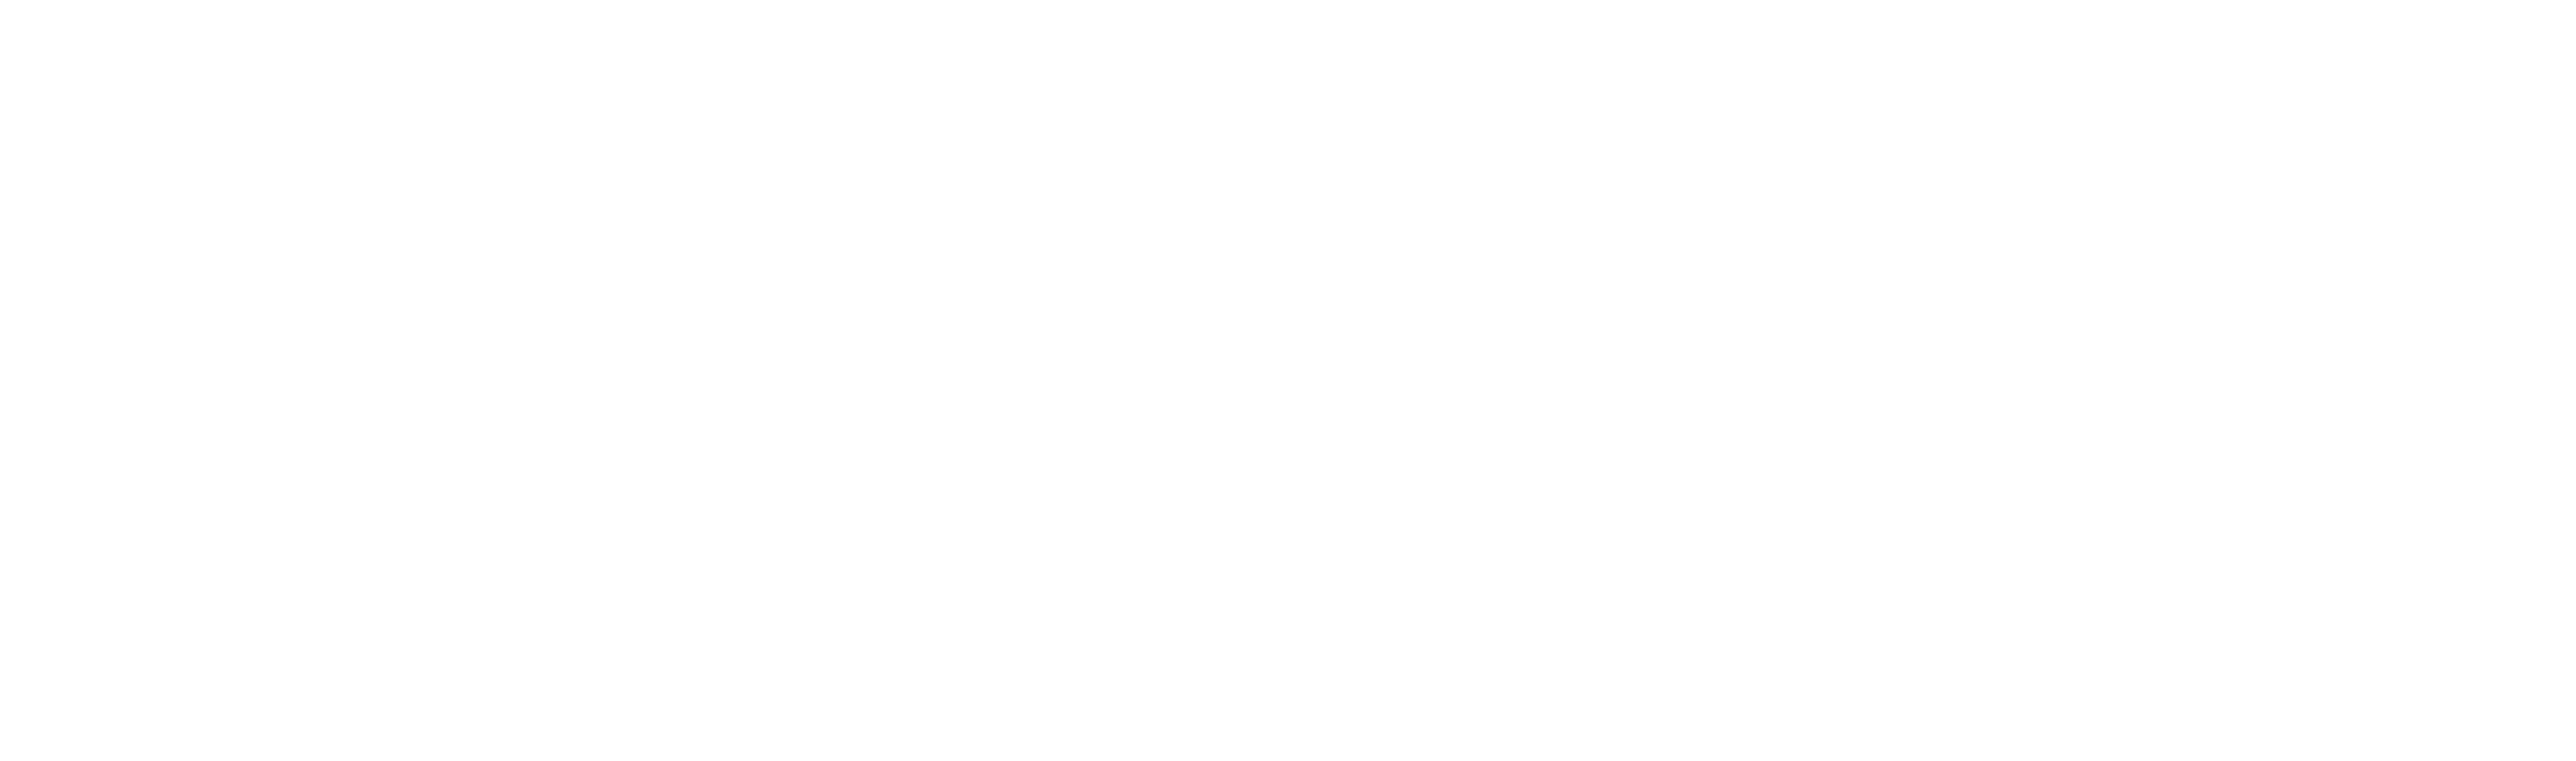 Giant Biogene